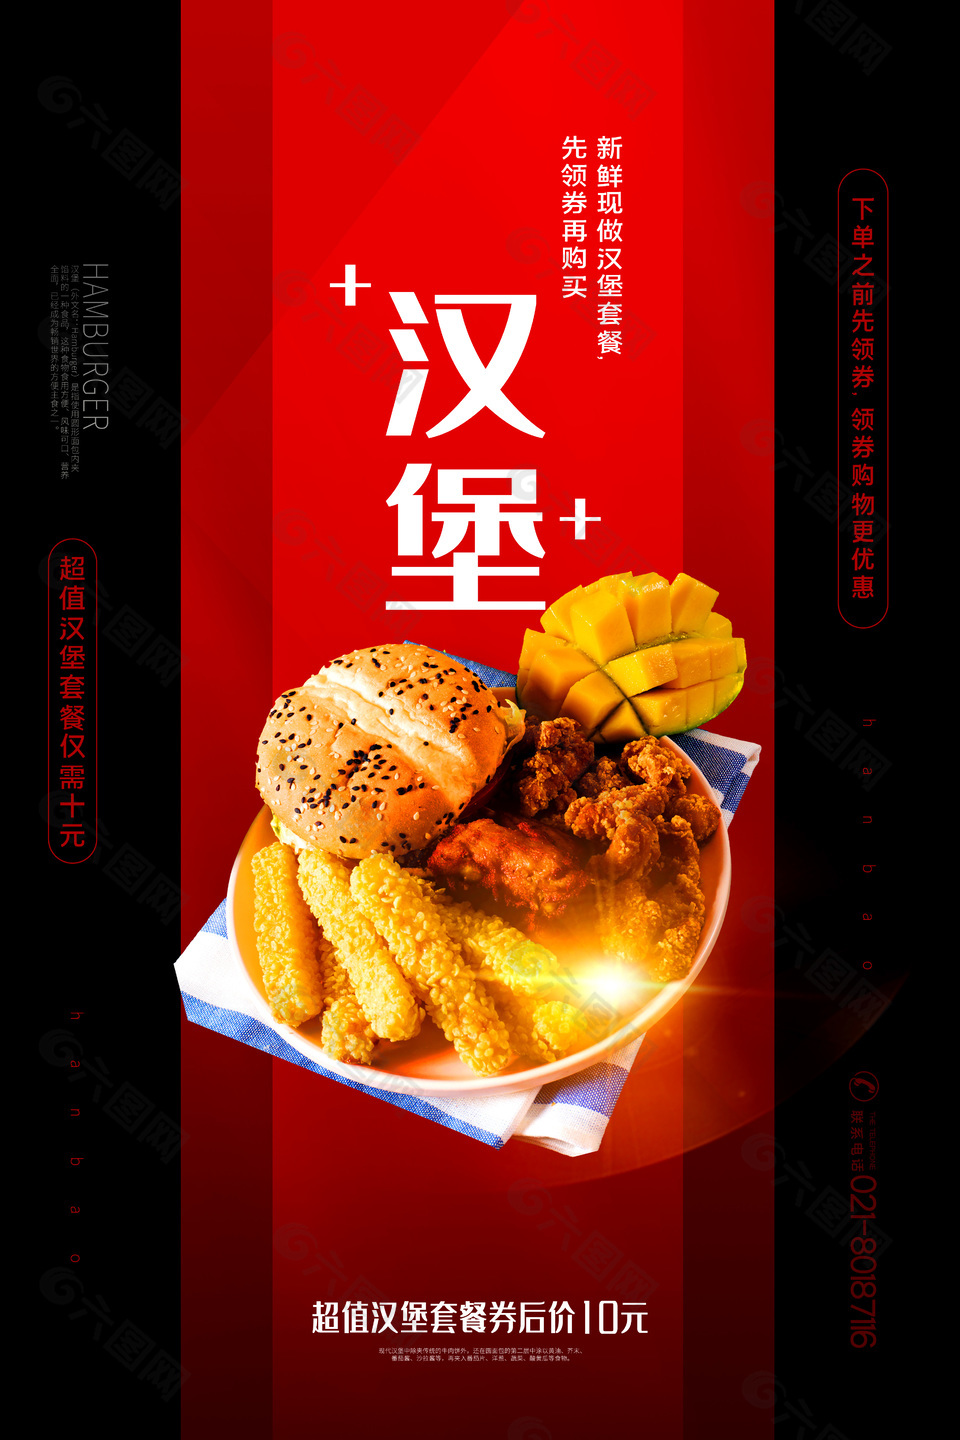 汉堡小吃活动宣传海报